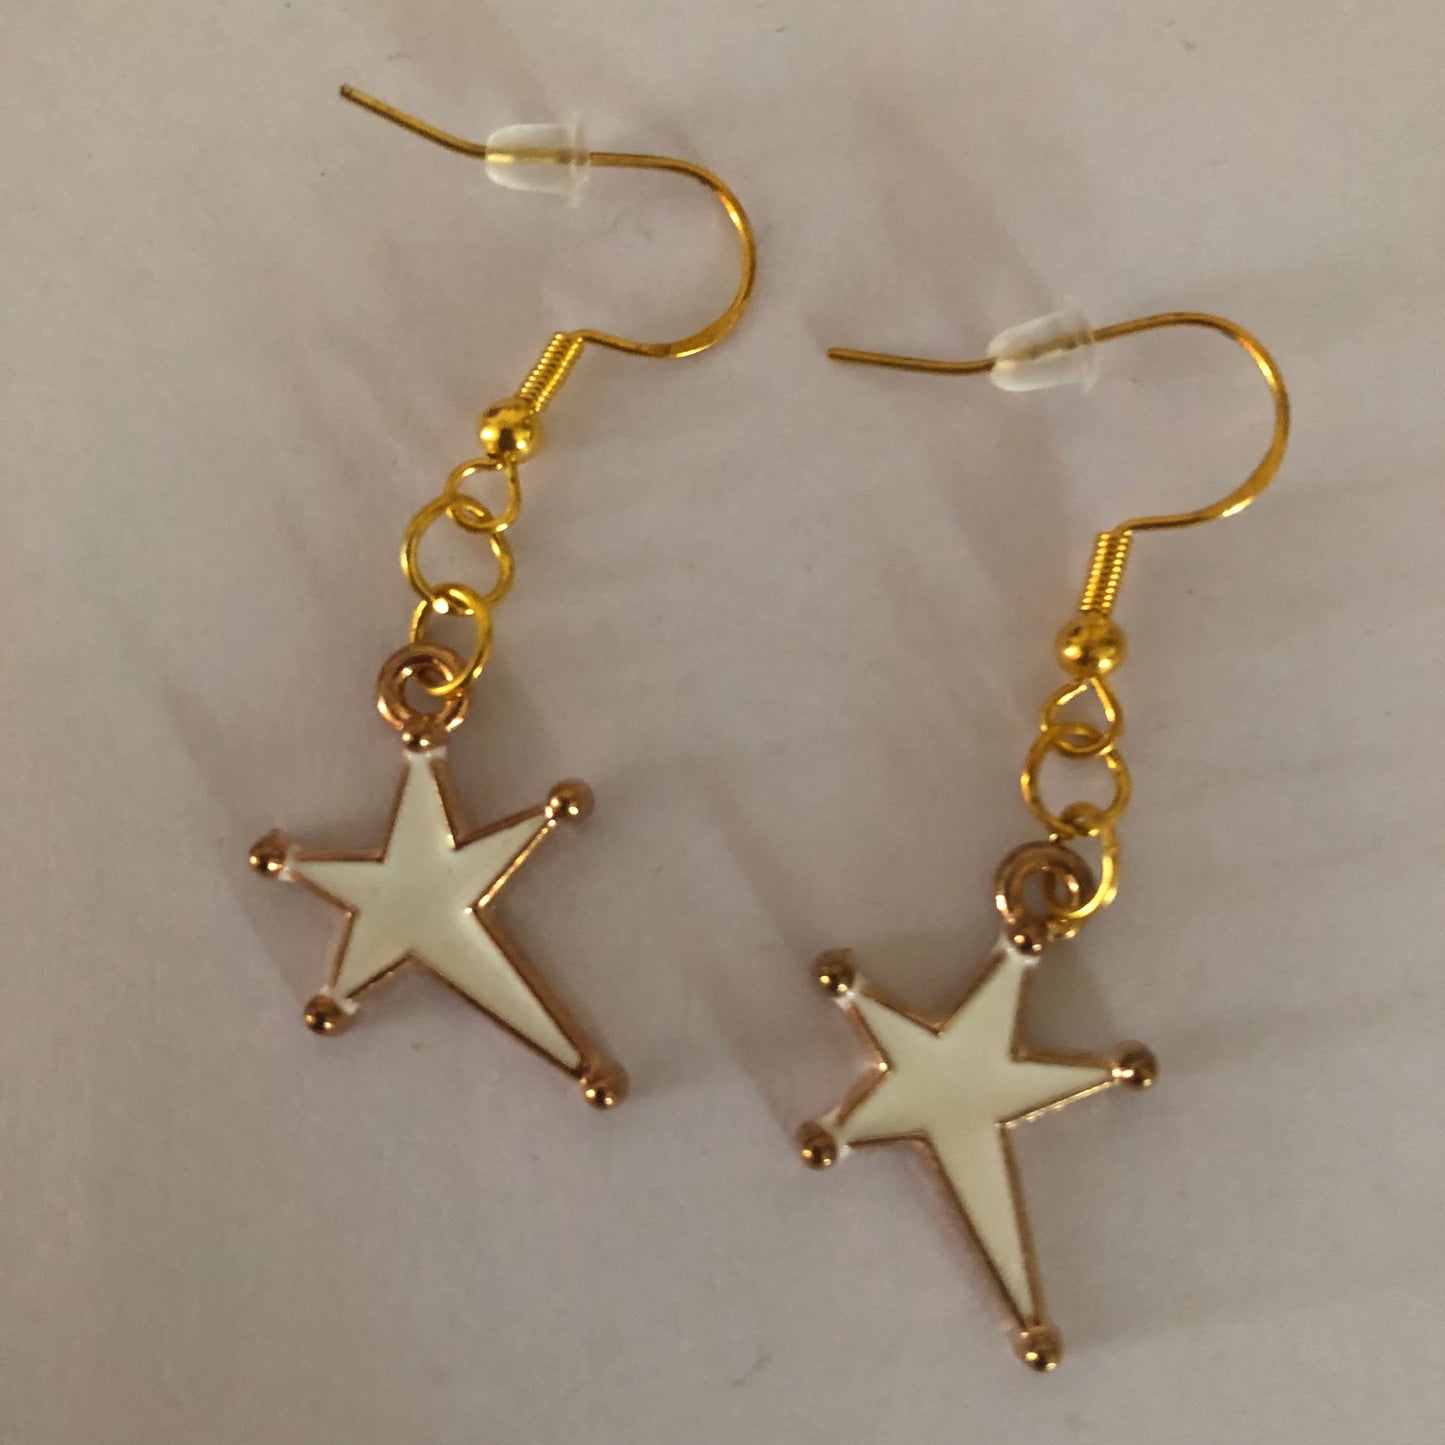 Star-shaped earrings